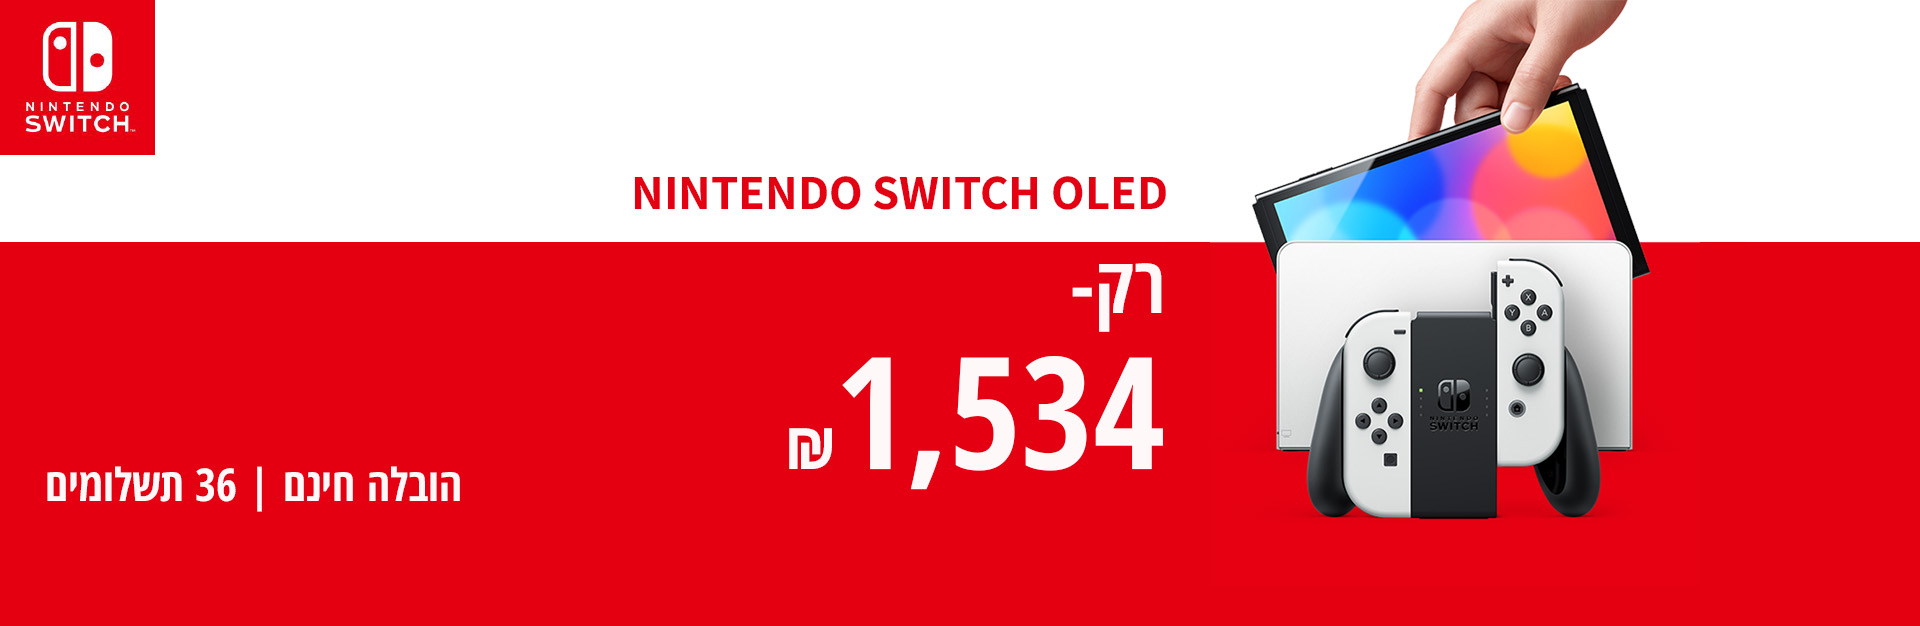 Nintendo Switch OLED במבצע